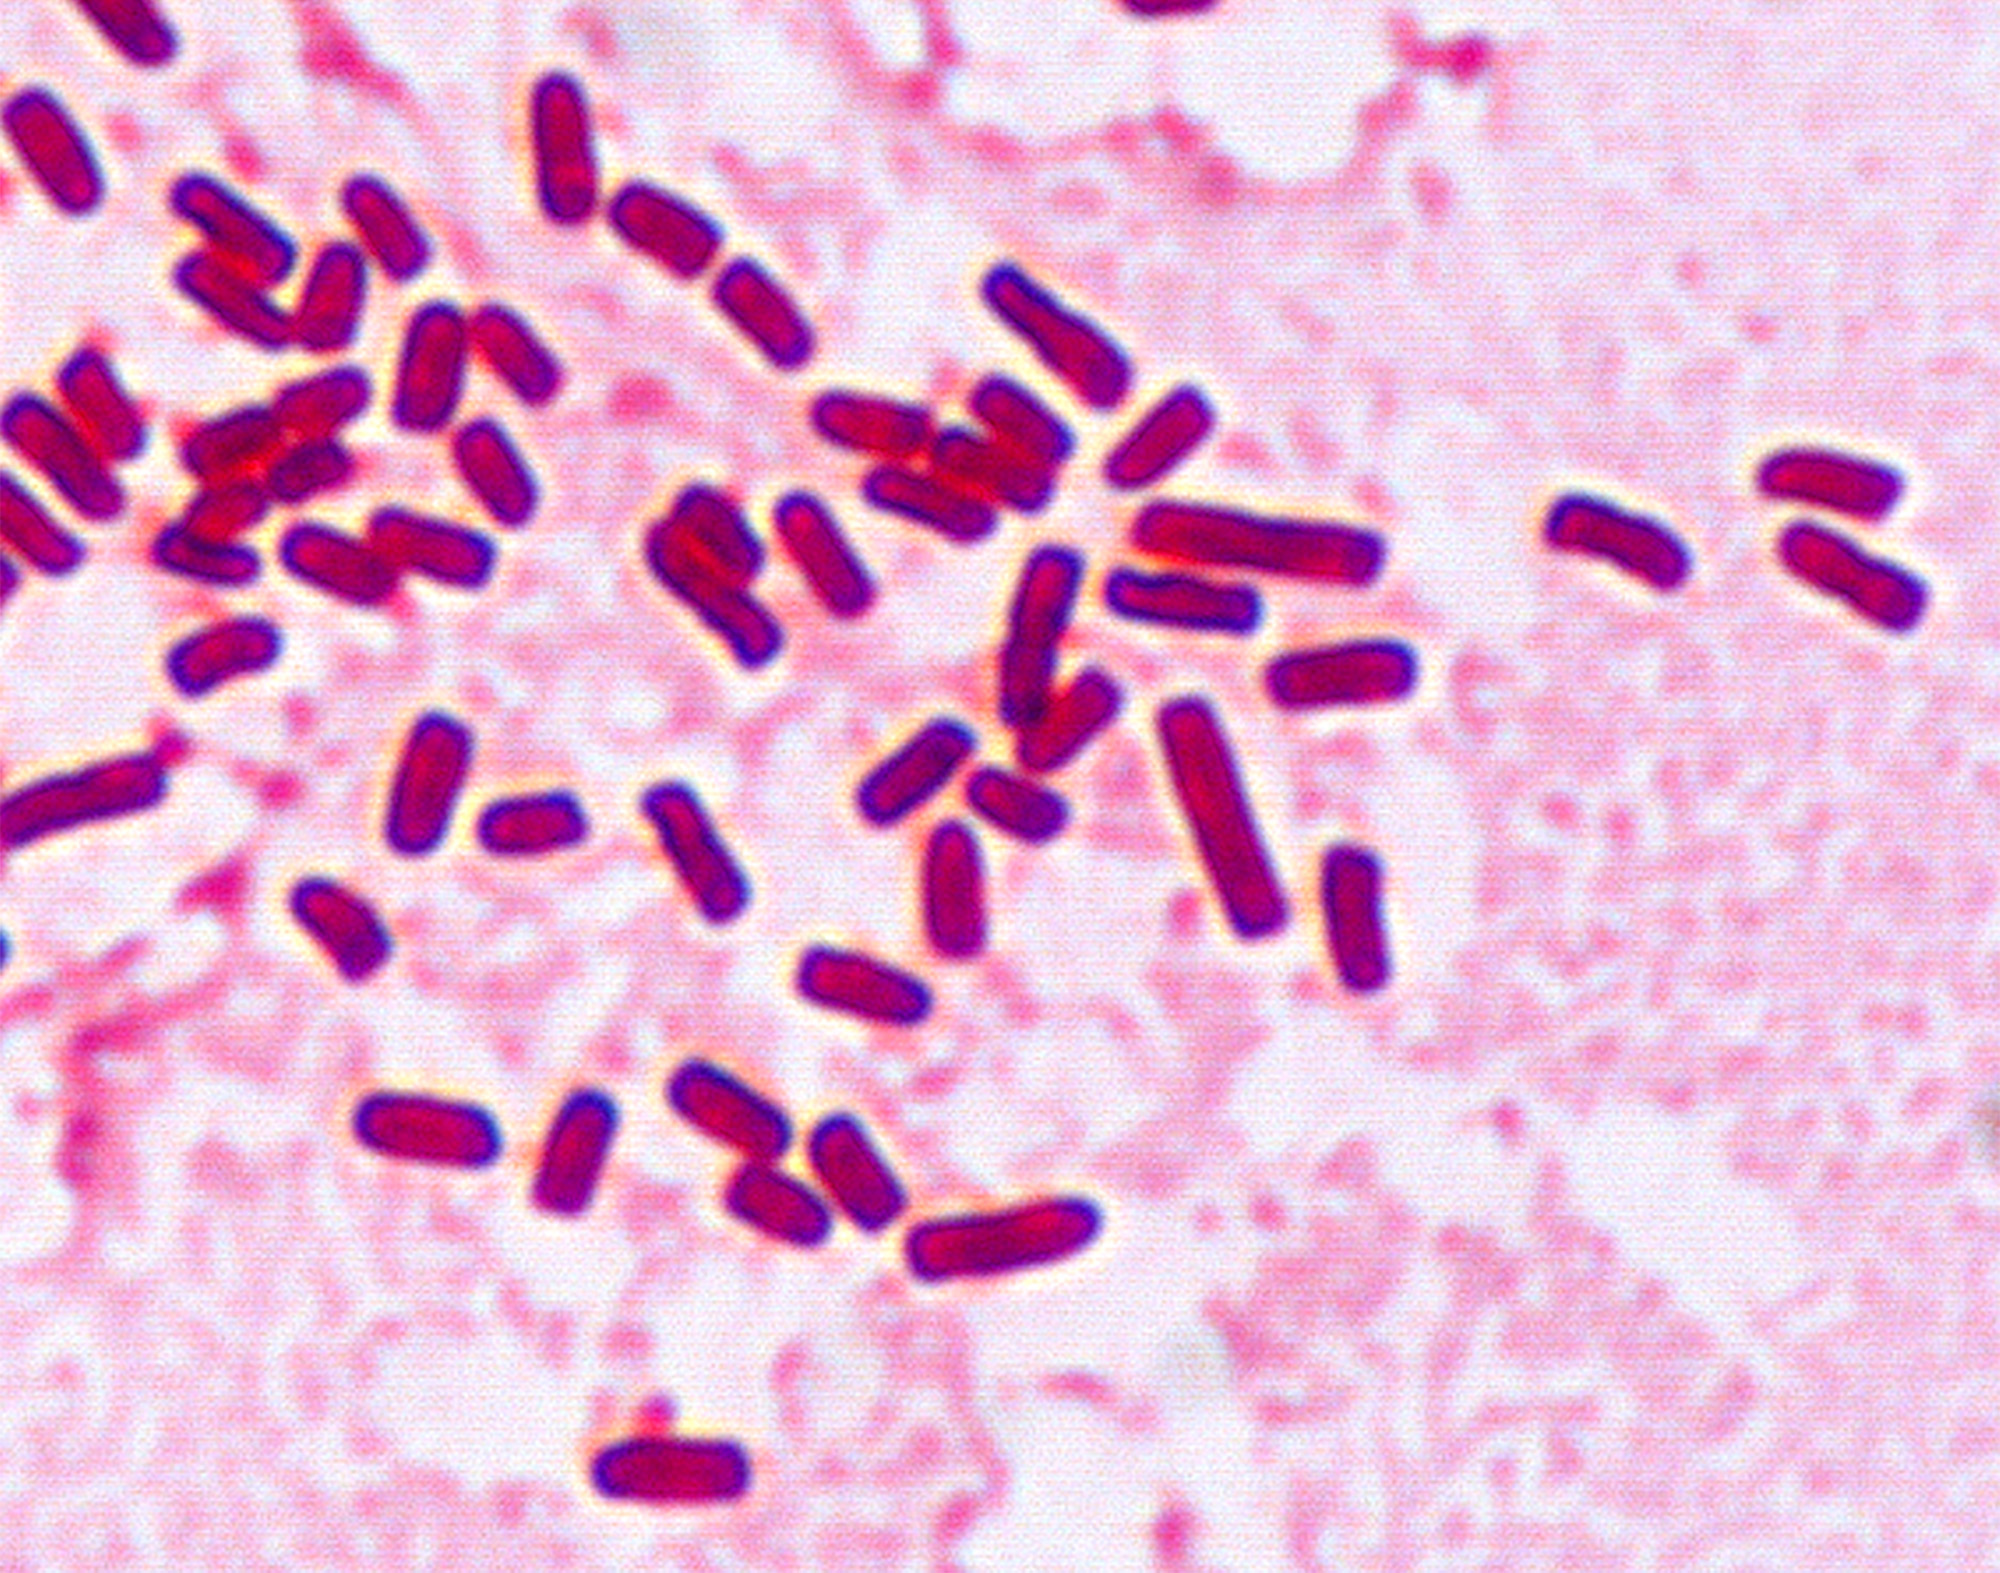 Az enterobacteriaceae spp kenetek férfiakban